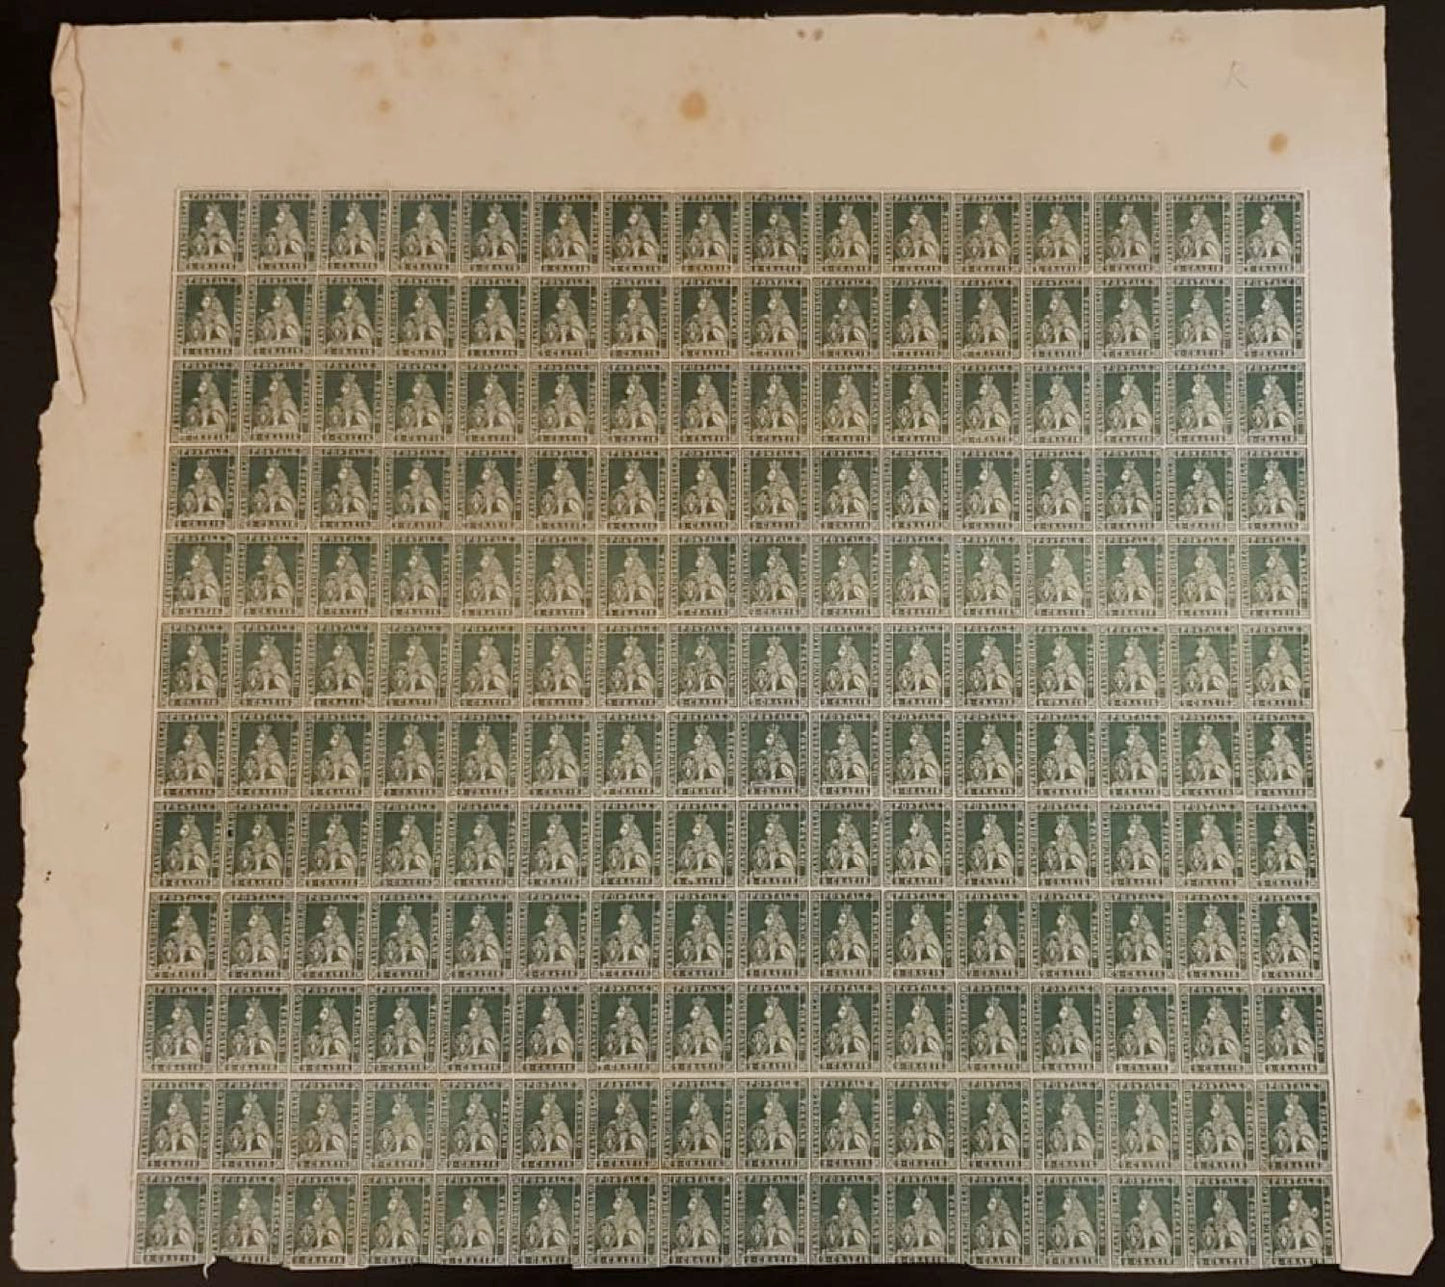 202 - 1852 - Granducato di Toscana, gran parte di foglio di prova con tre margini completi del francobollo da 2 crazie azzurro (P5)